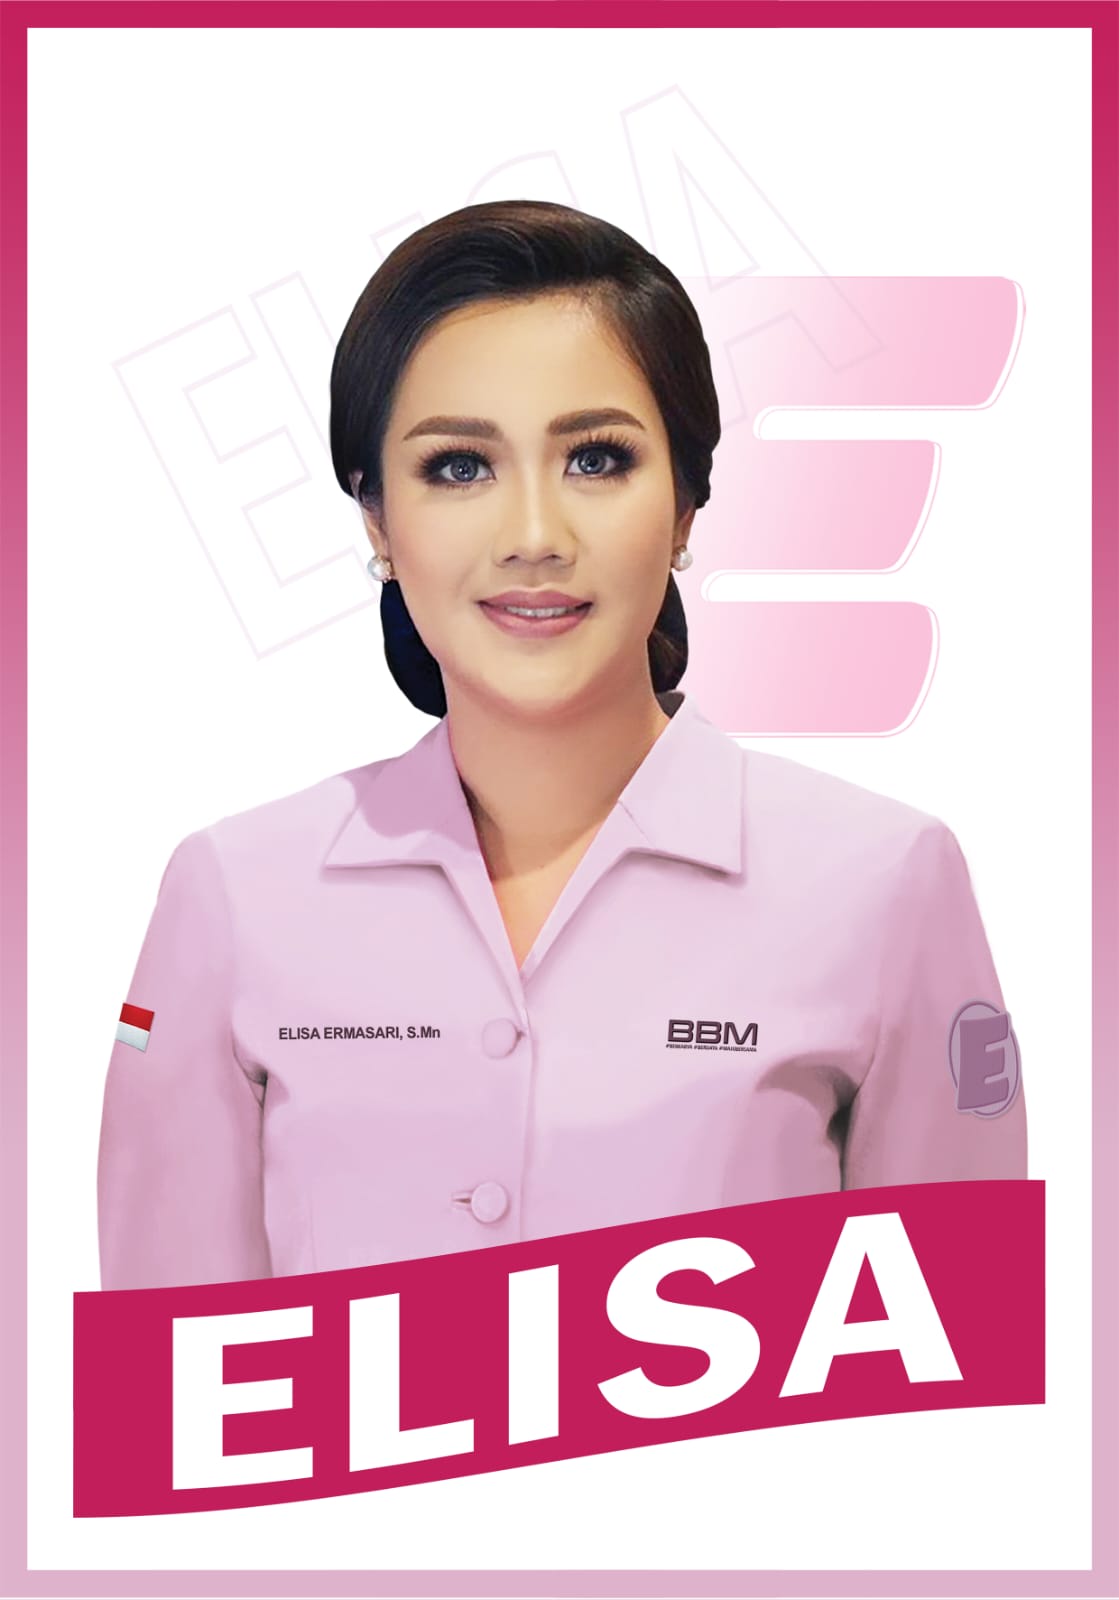 Elisa, Peraih Votes Terbanyak Polling rbtv.disway.id, Muda dan Siap Mengabdikan Diri untuk Bengkulu 